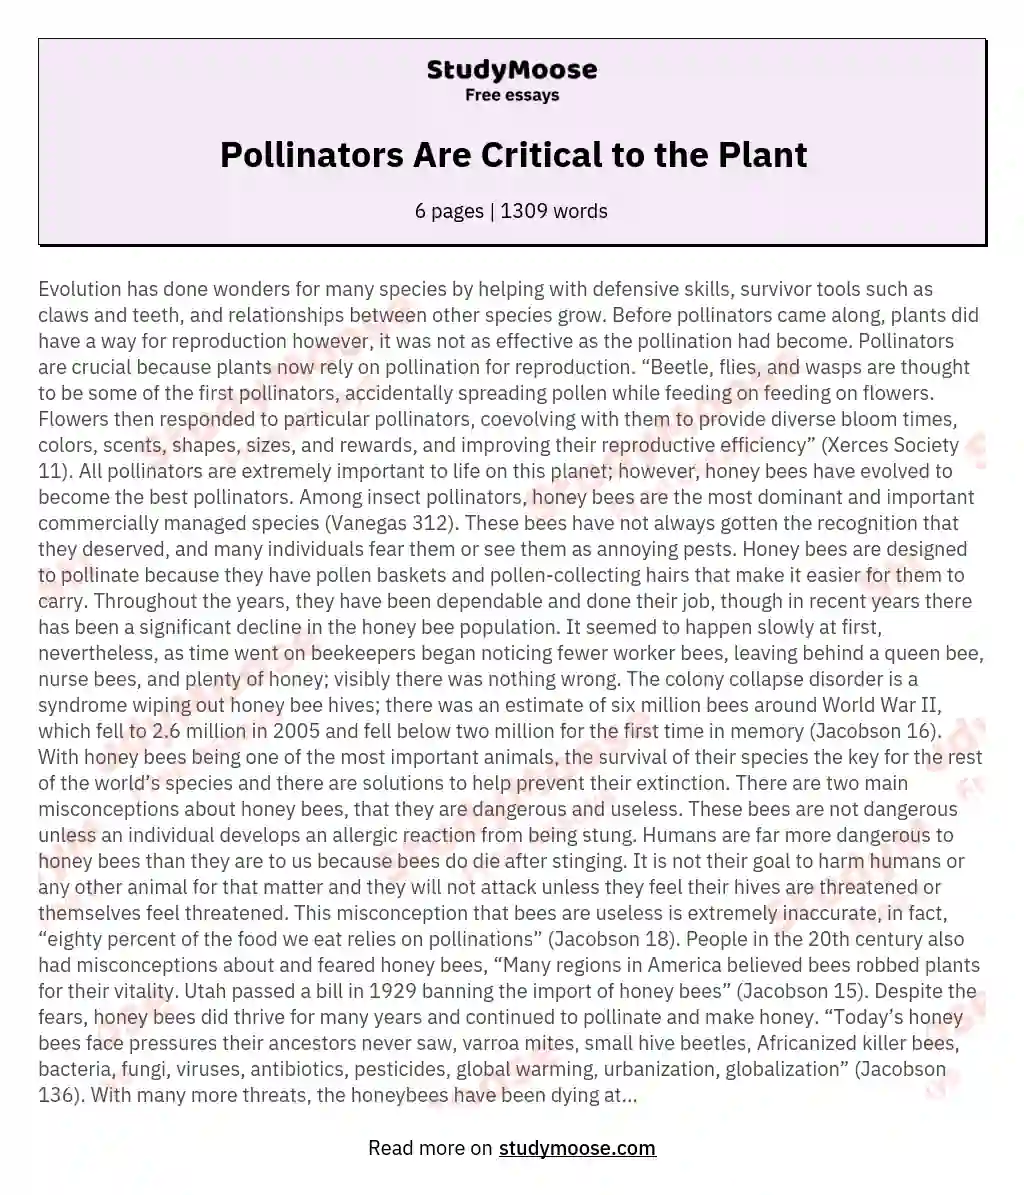 Pollinators Are Critical to the Plant essay